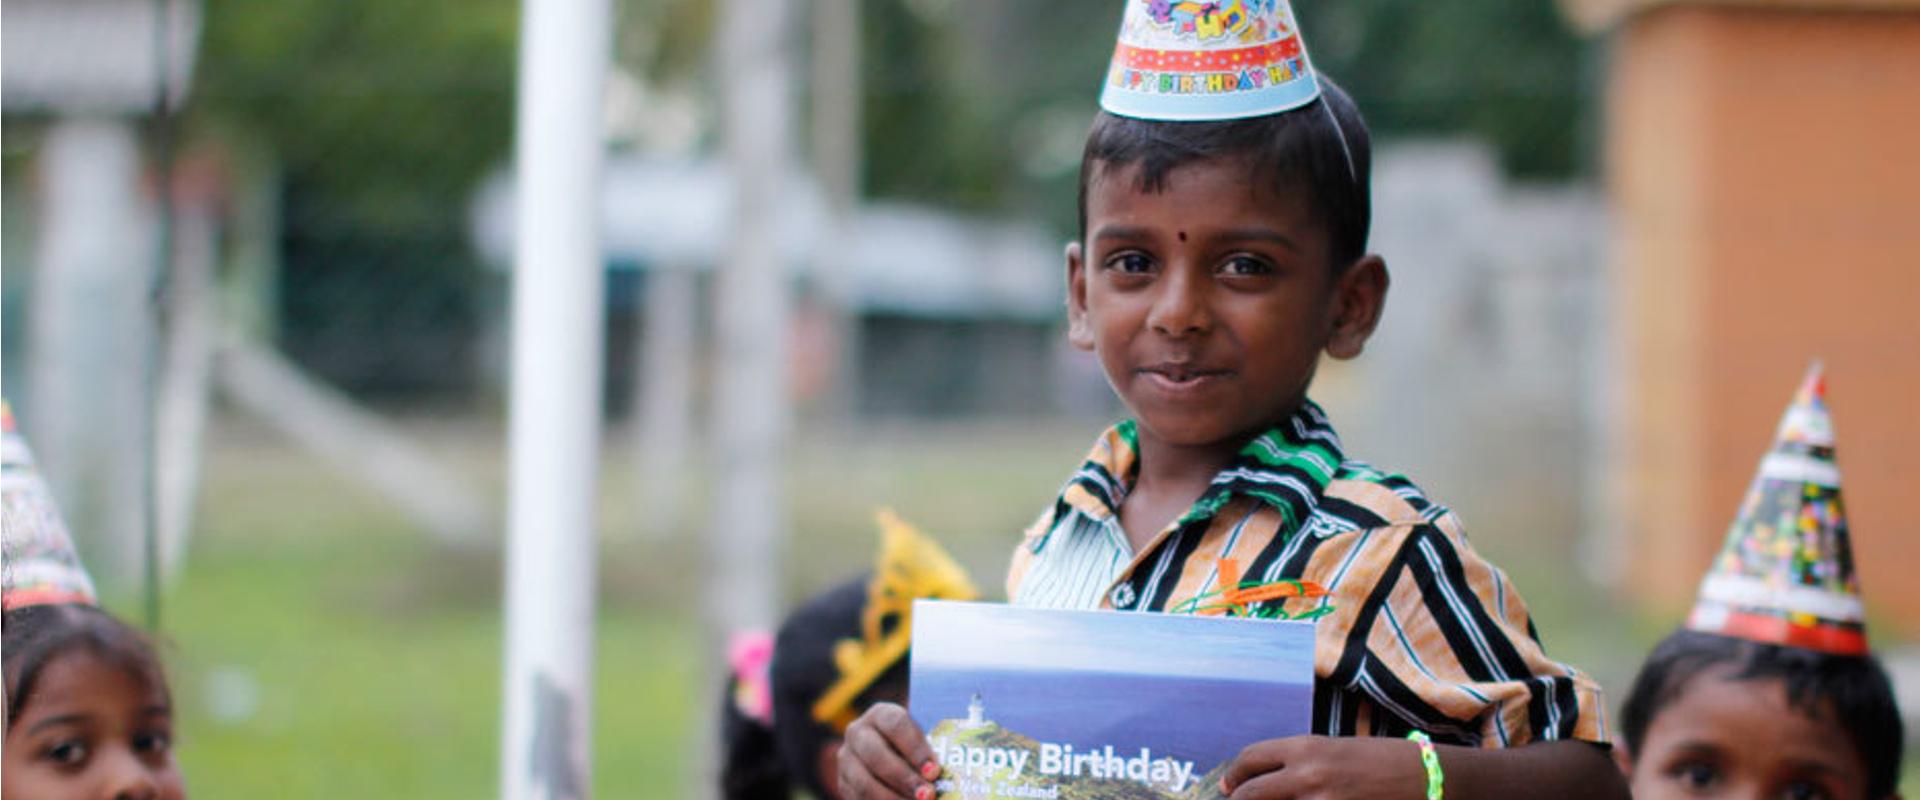 Junge in Sri Lanka feiert Geburtstag